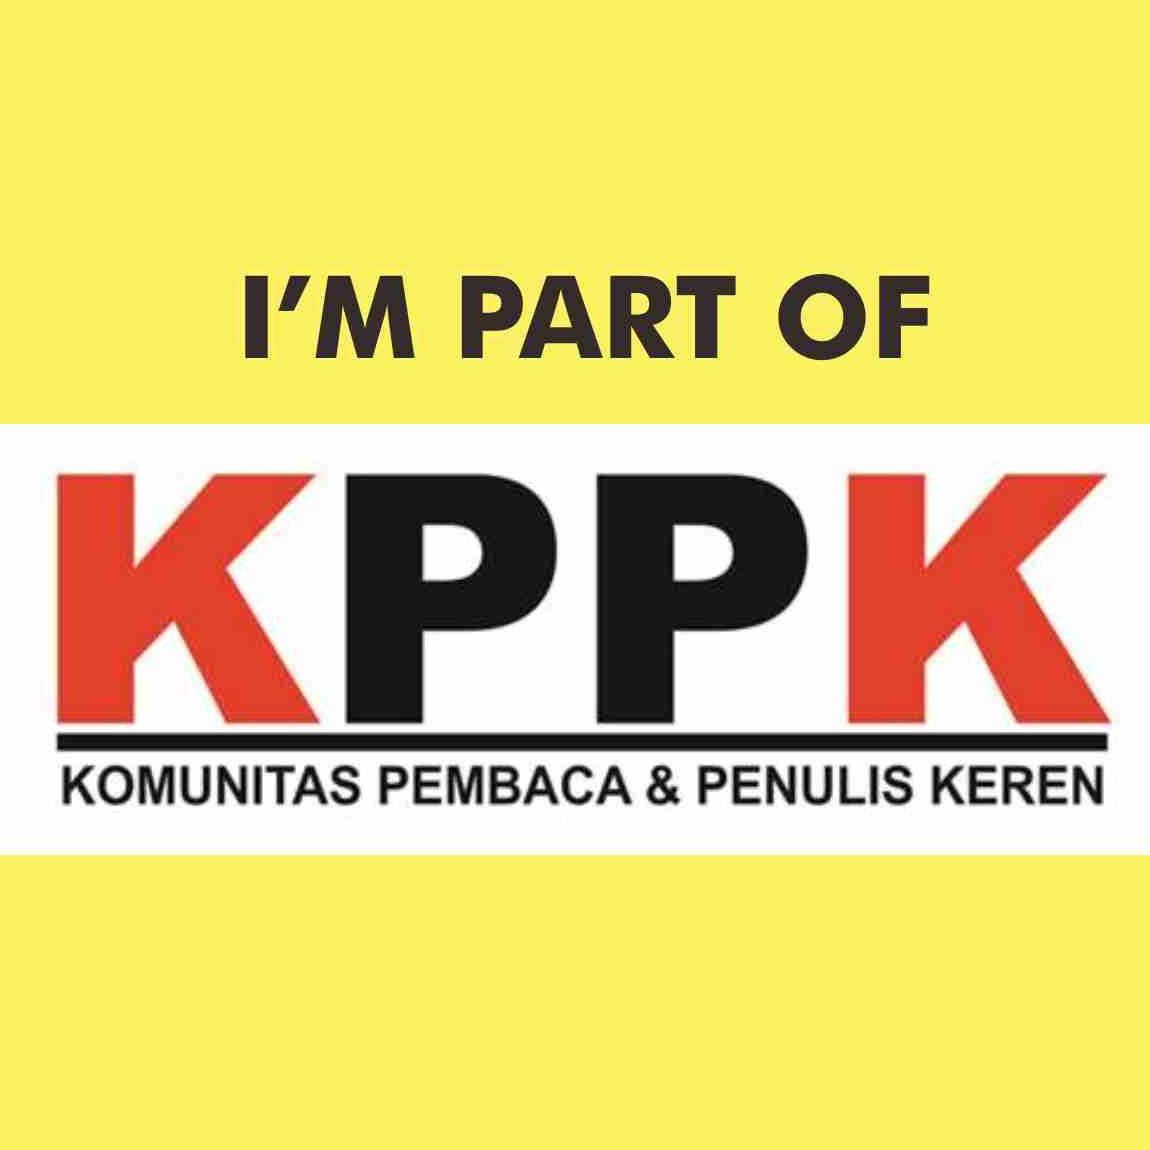 KPPK - Komunitas Pembaca dan Penulis Keren | Tempatnya para pembaca dan penulis dipertemukan dalam satu lingkaran | Join with us: http://t.co/U8Mxnj0OpH